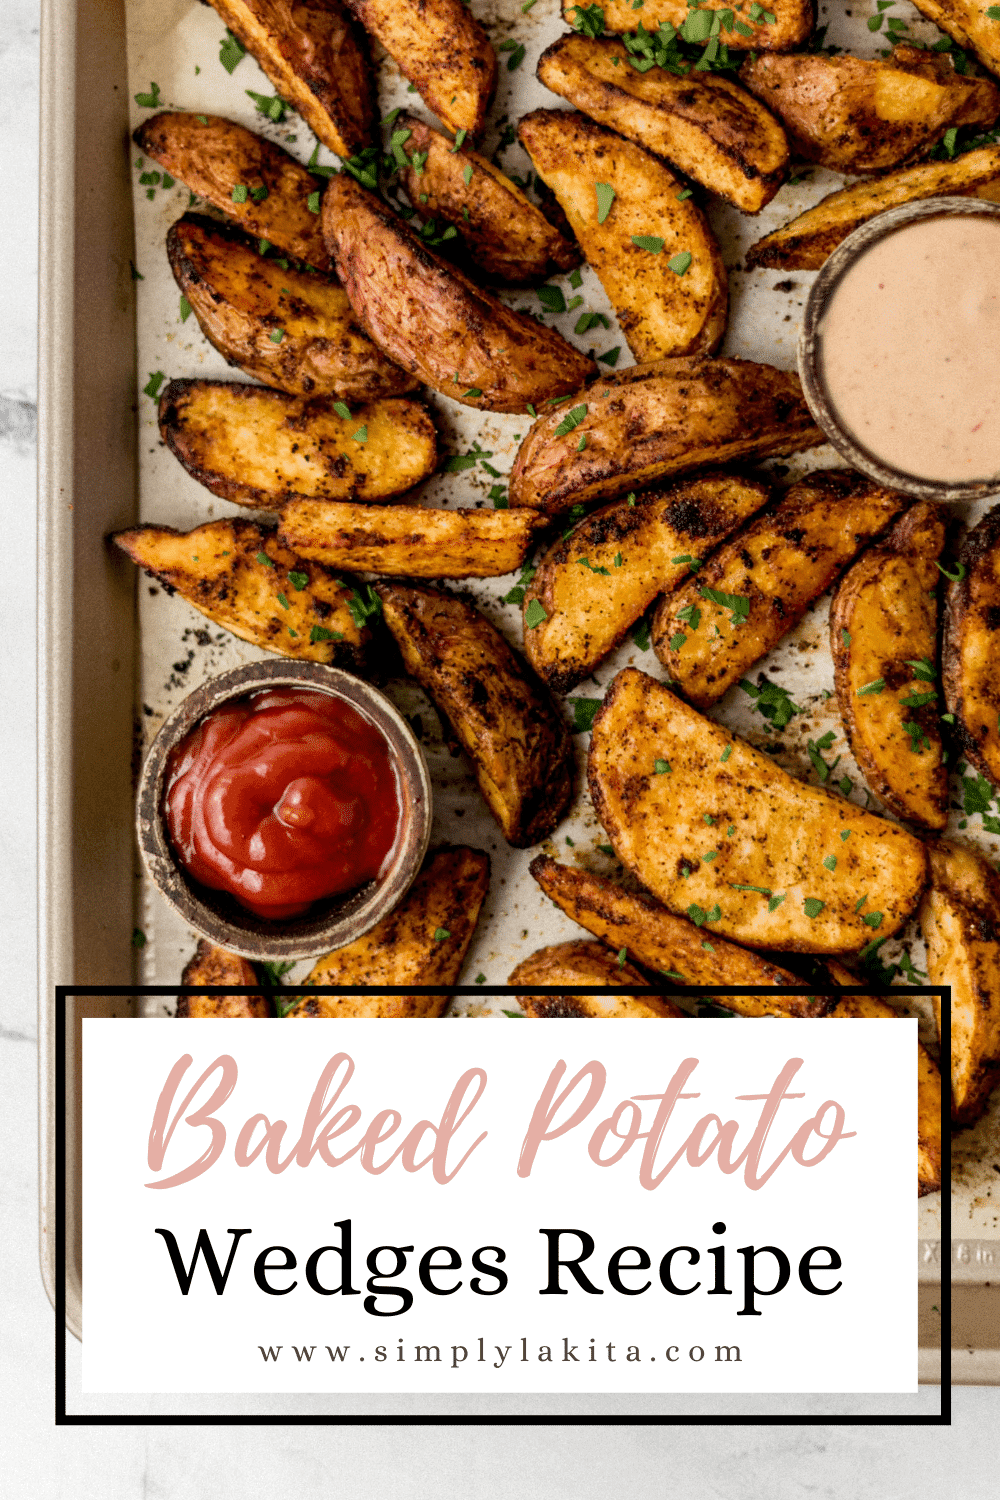 Baked Potato Wedges Recipe